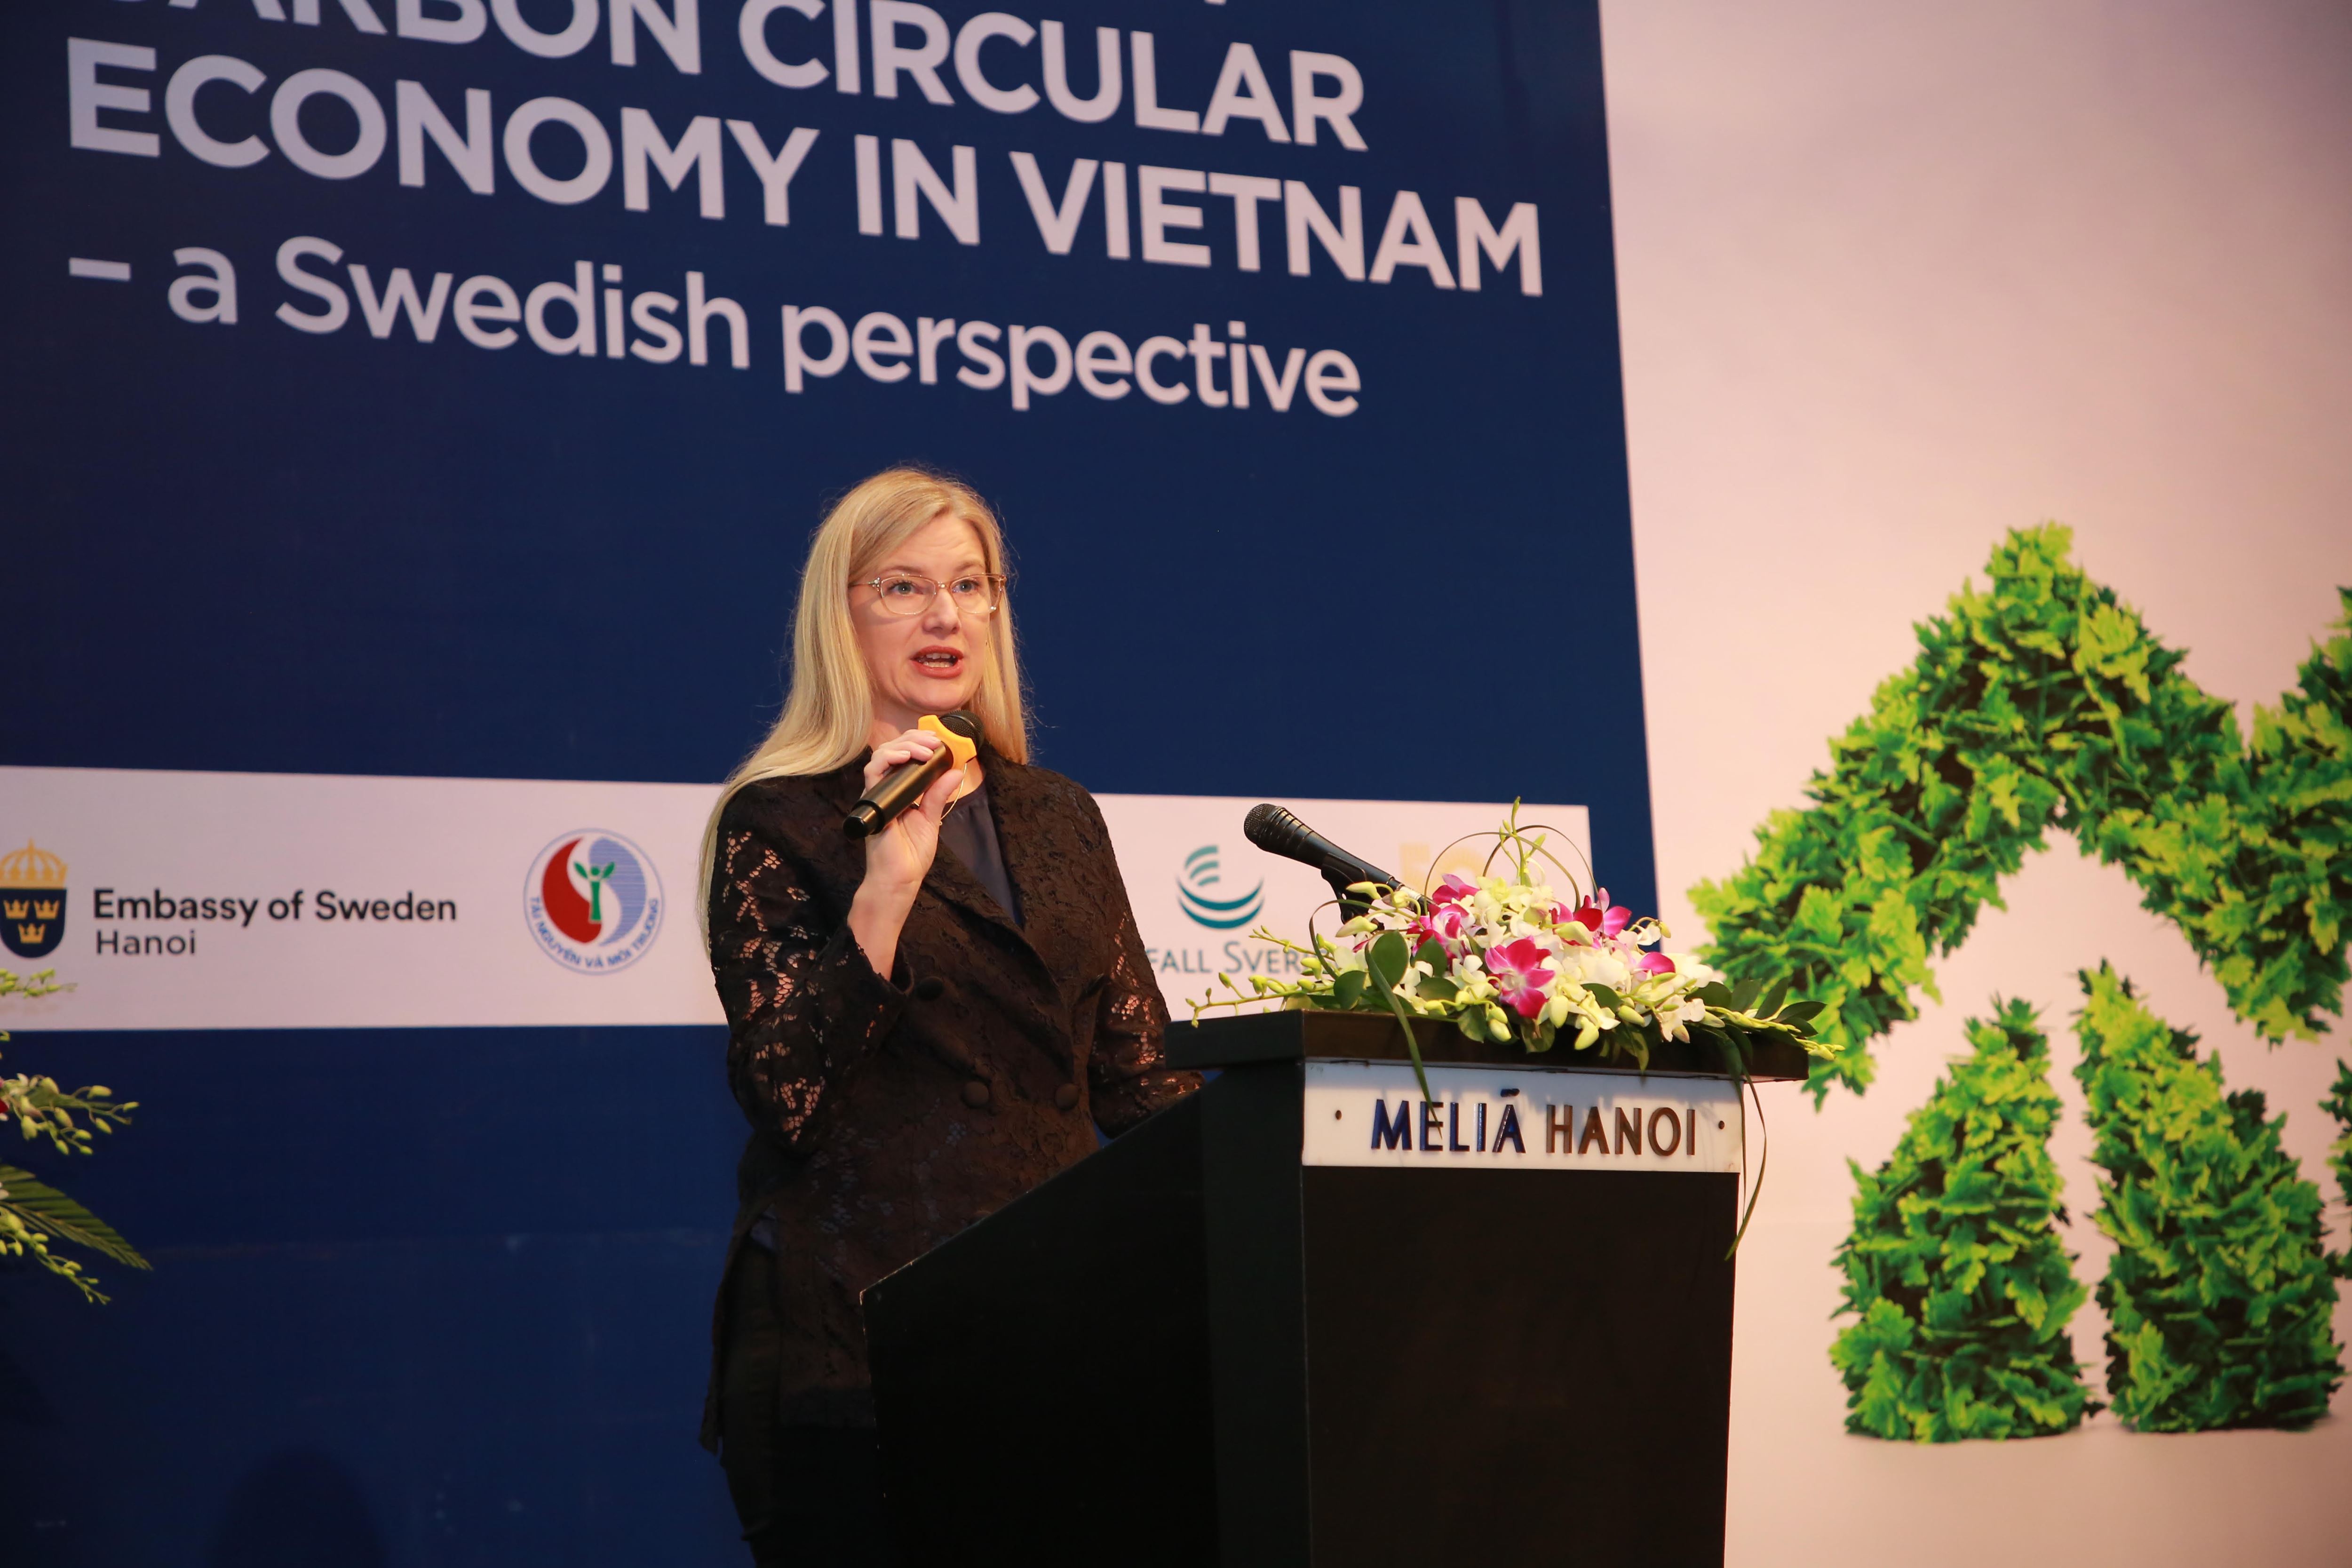 Thụy Điển hướng tới một xã hội không rác thải và sẵn sàng chia sẻ kinh nghiệm với Việt Nam